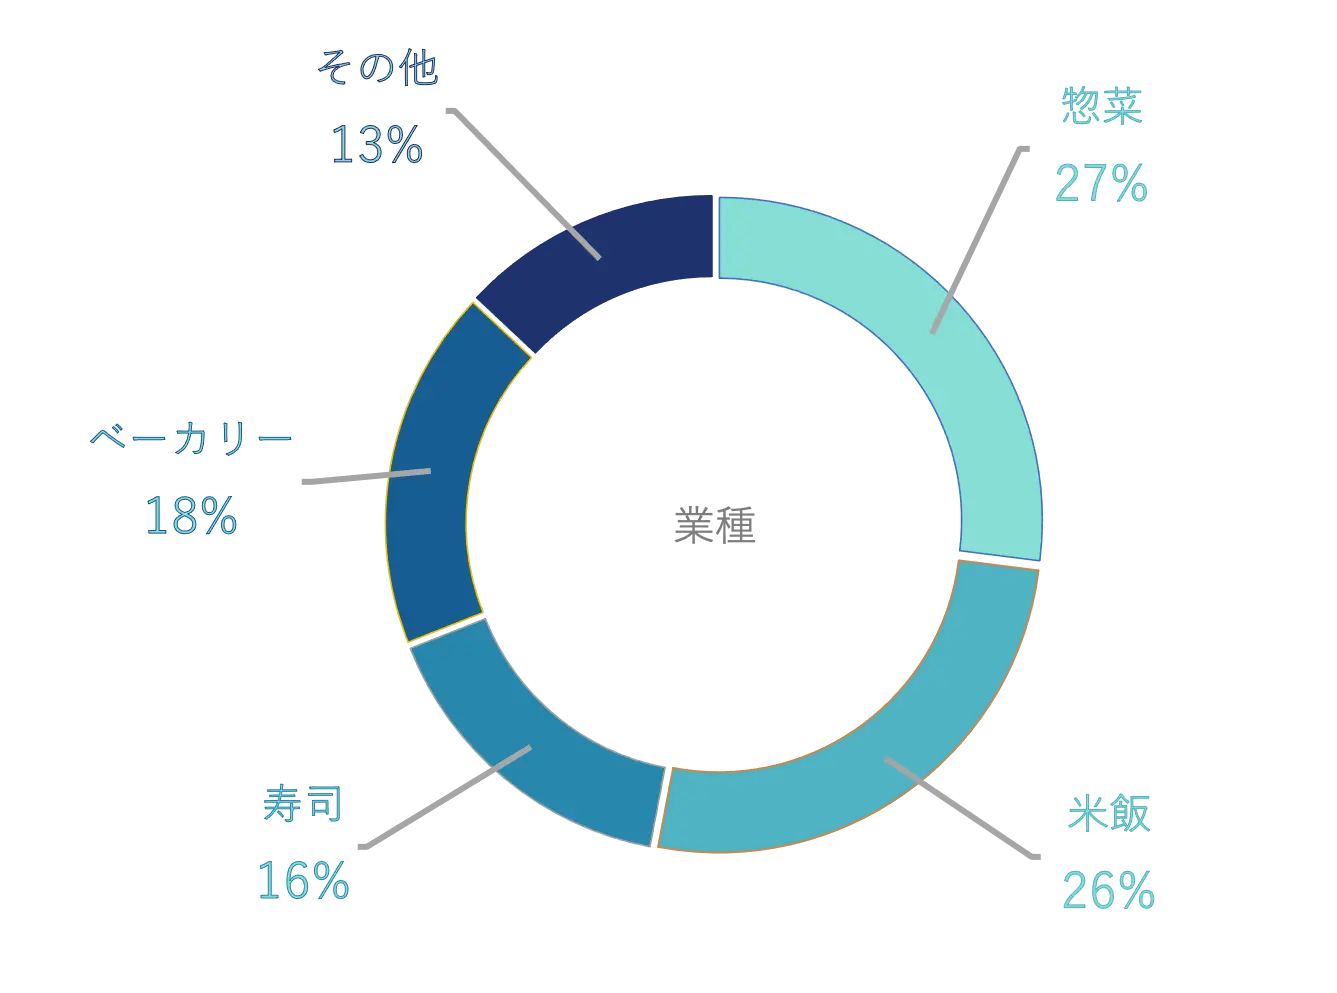 利用店舗における部門ごとの利用割合を表した円グラフ